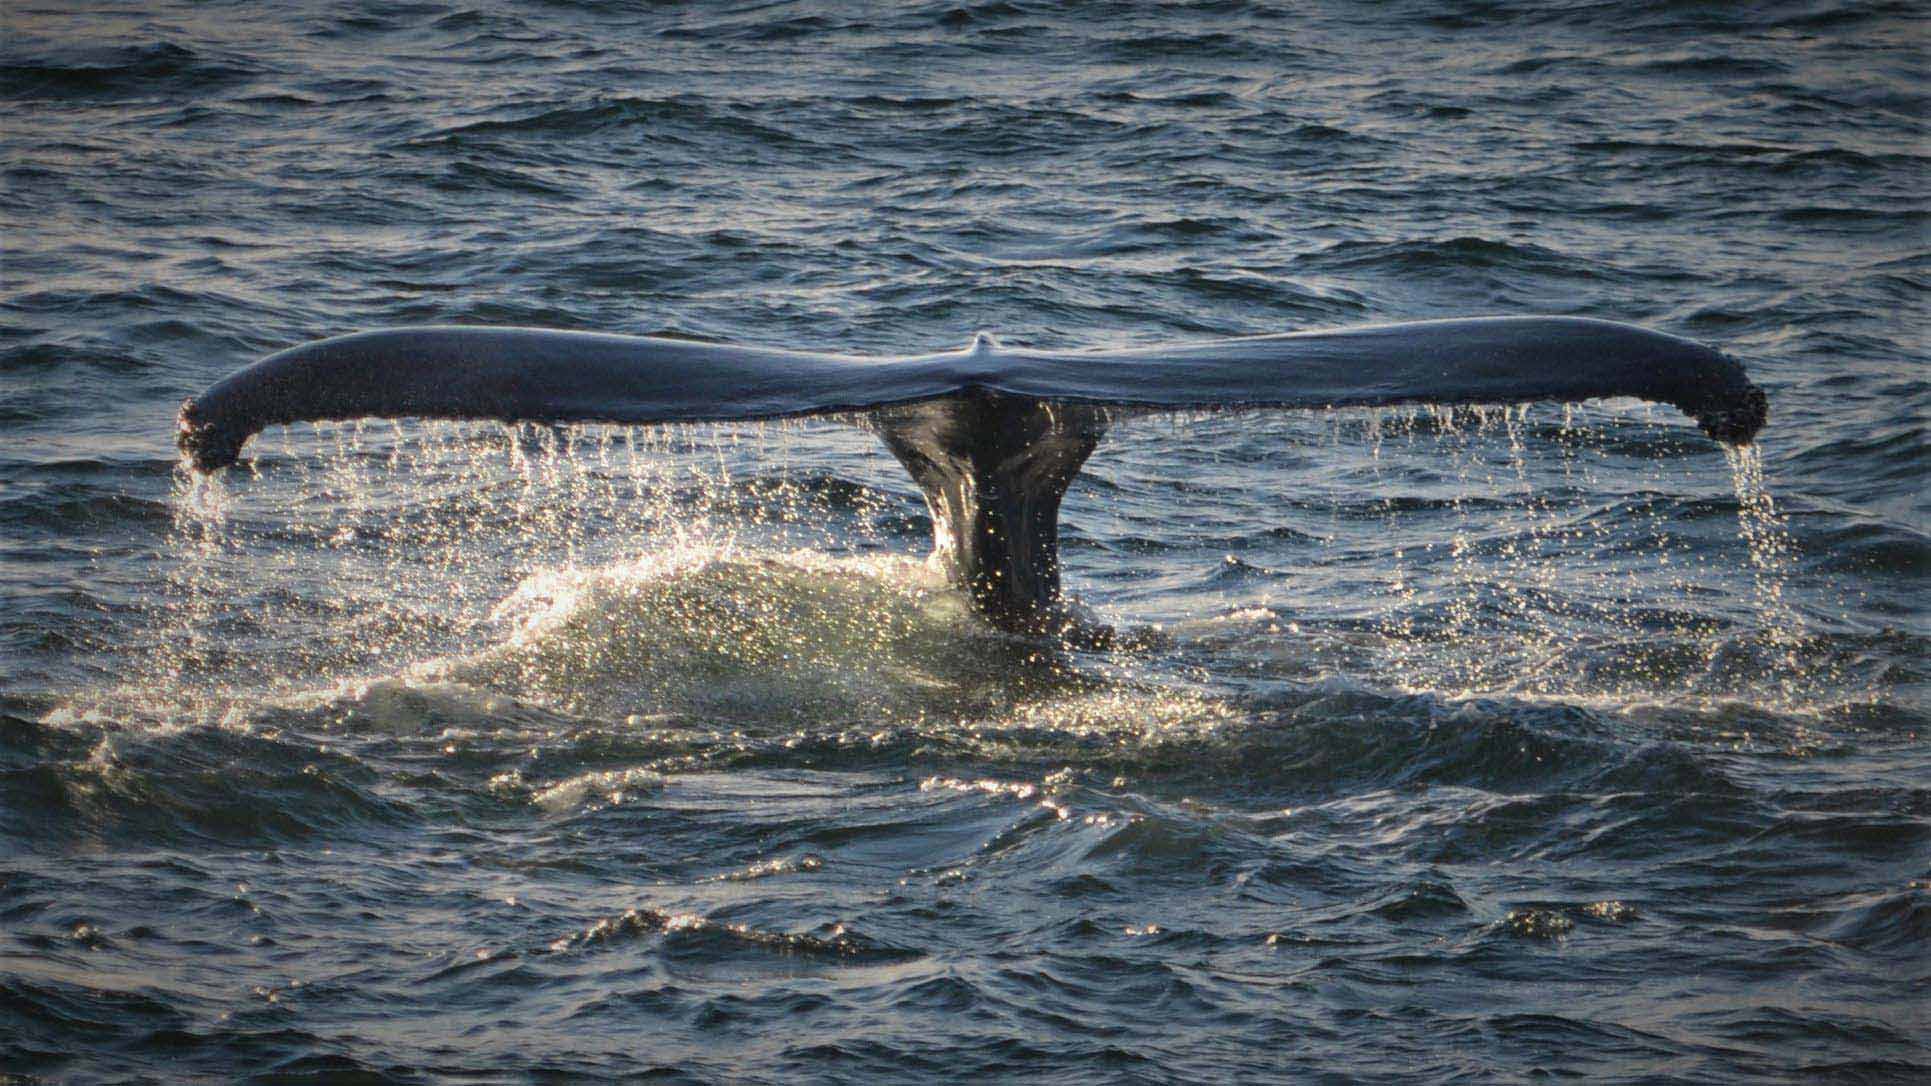 Air ekor paus mengalir sebelum tenggelam di bawah air.